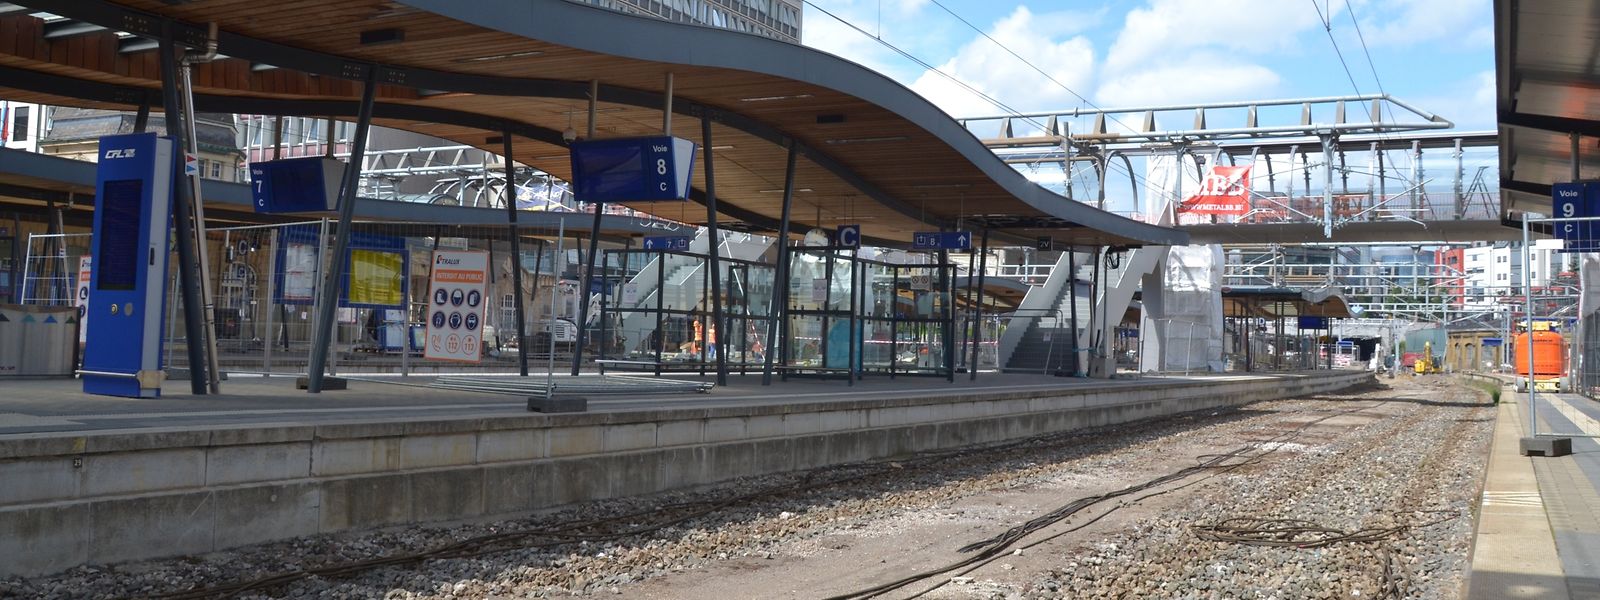 La passerelle piétonne, reliant les quartiers Gare et Bonnevoie, devrait être opérationnelle à la rentrée scolaire.